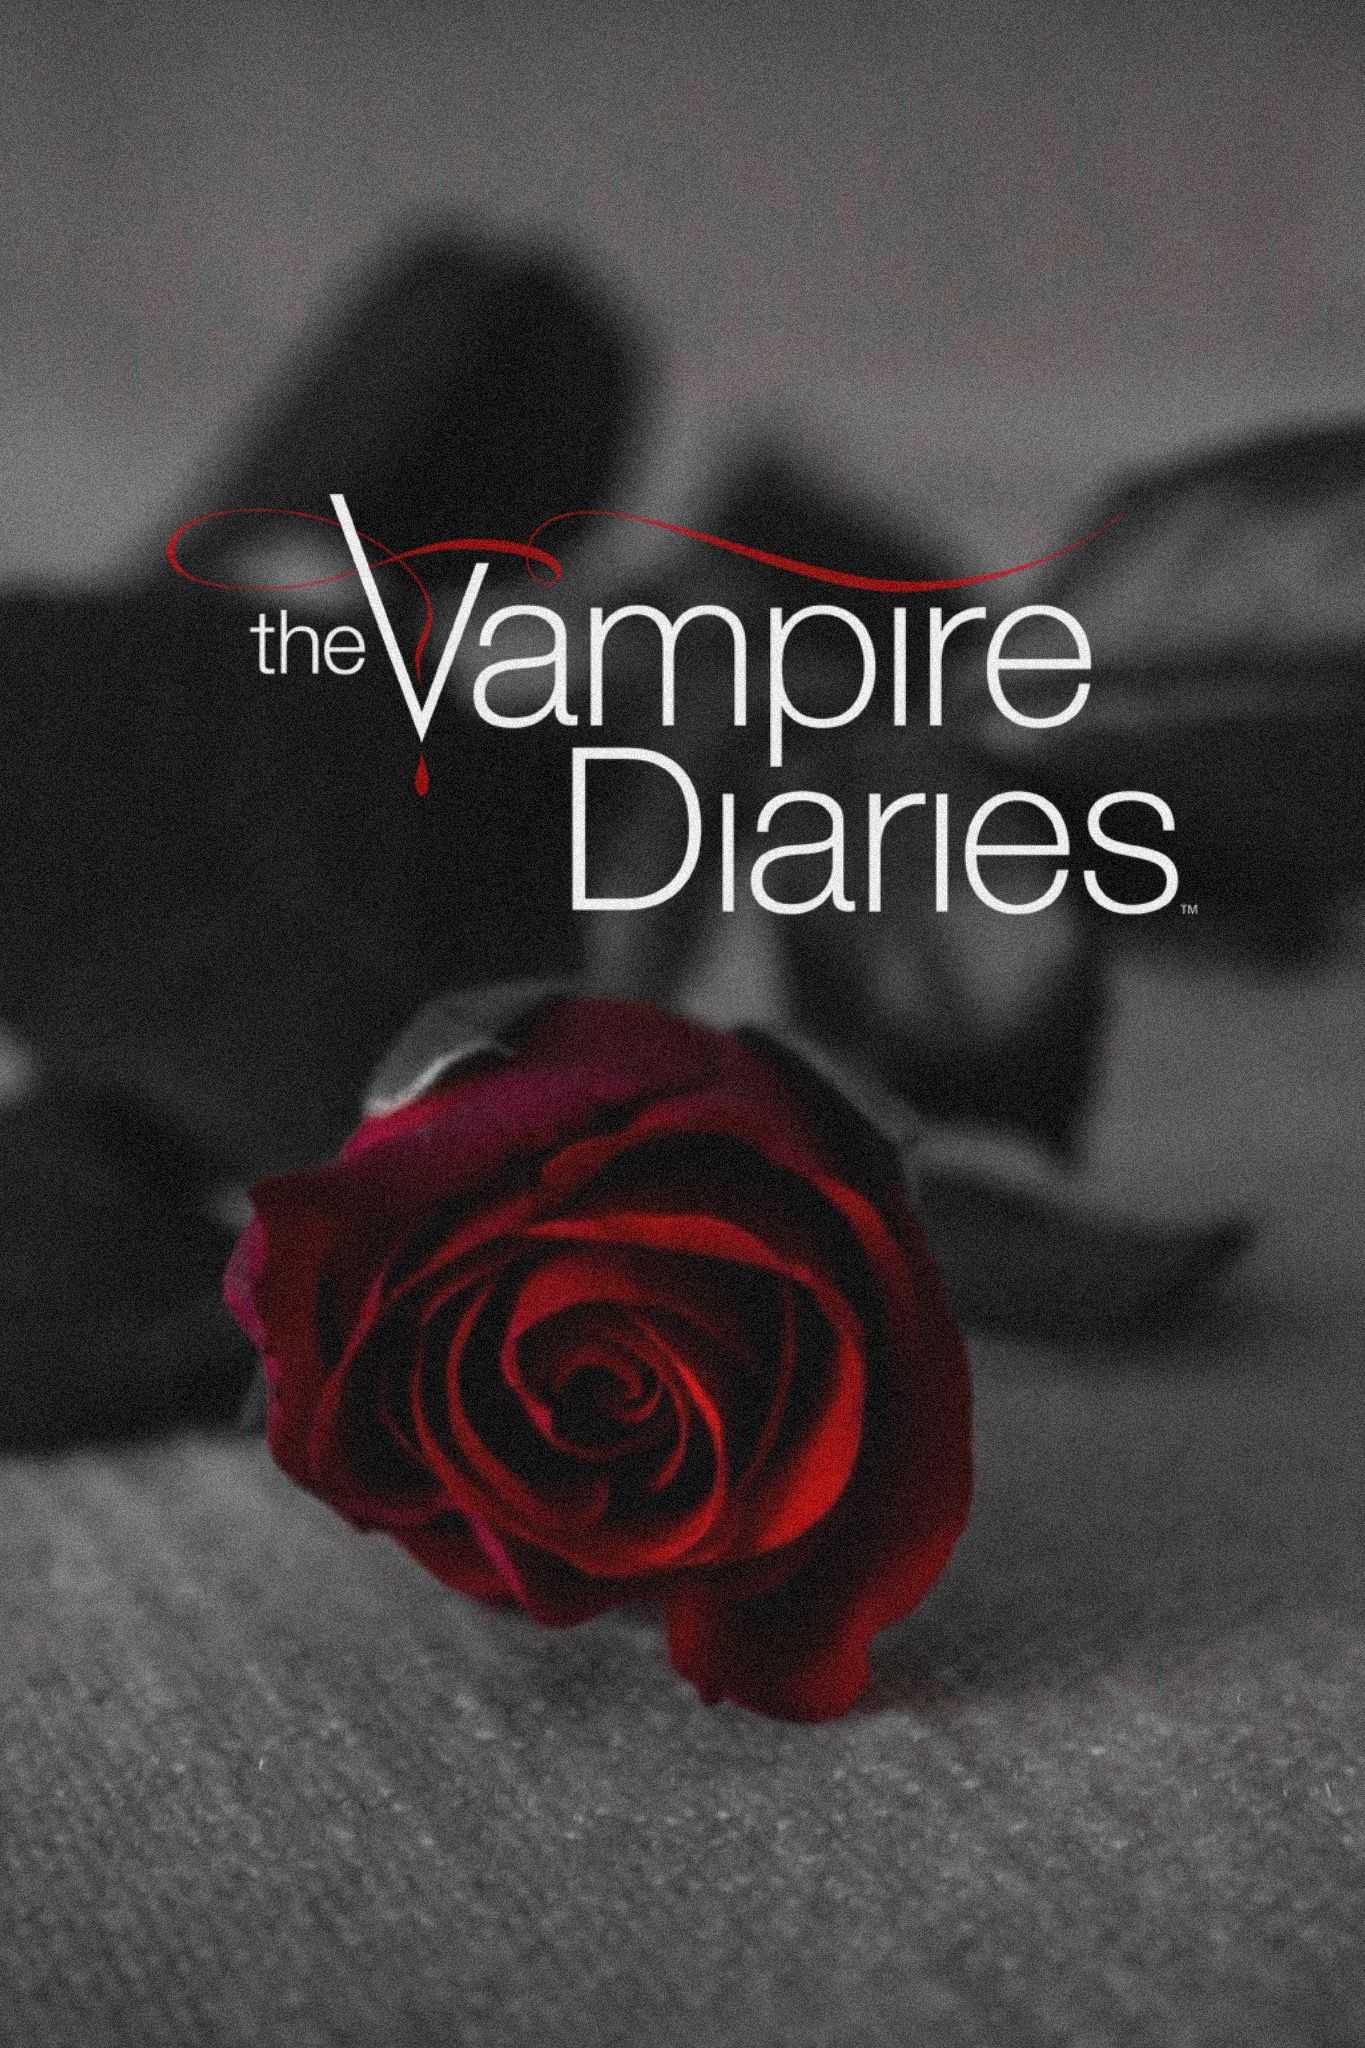 Vampire Diaries Wallpaper iPhone